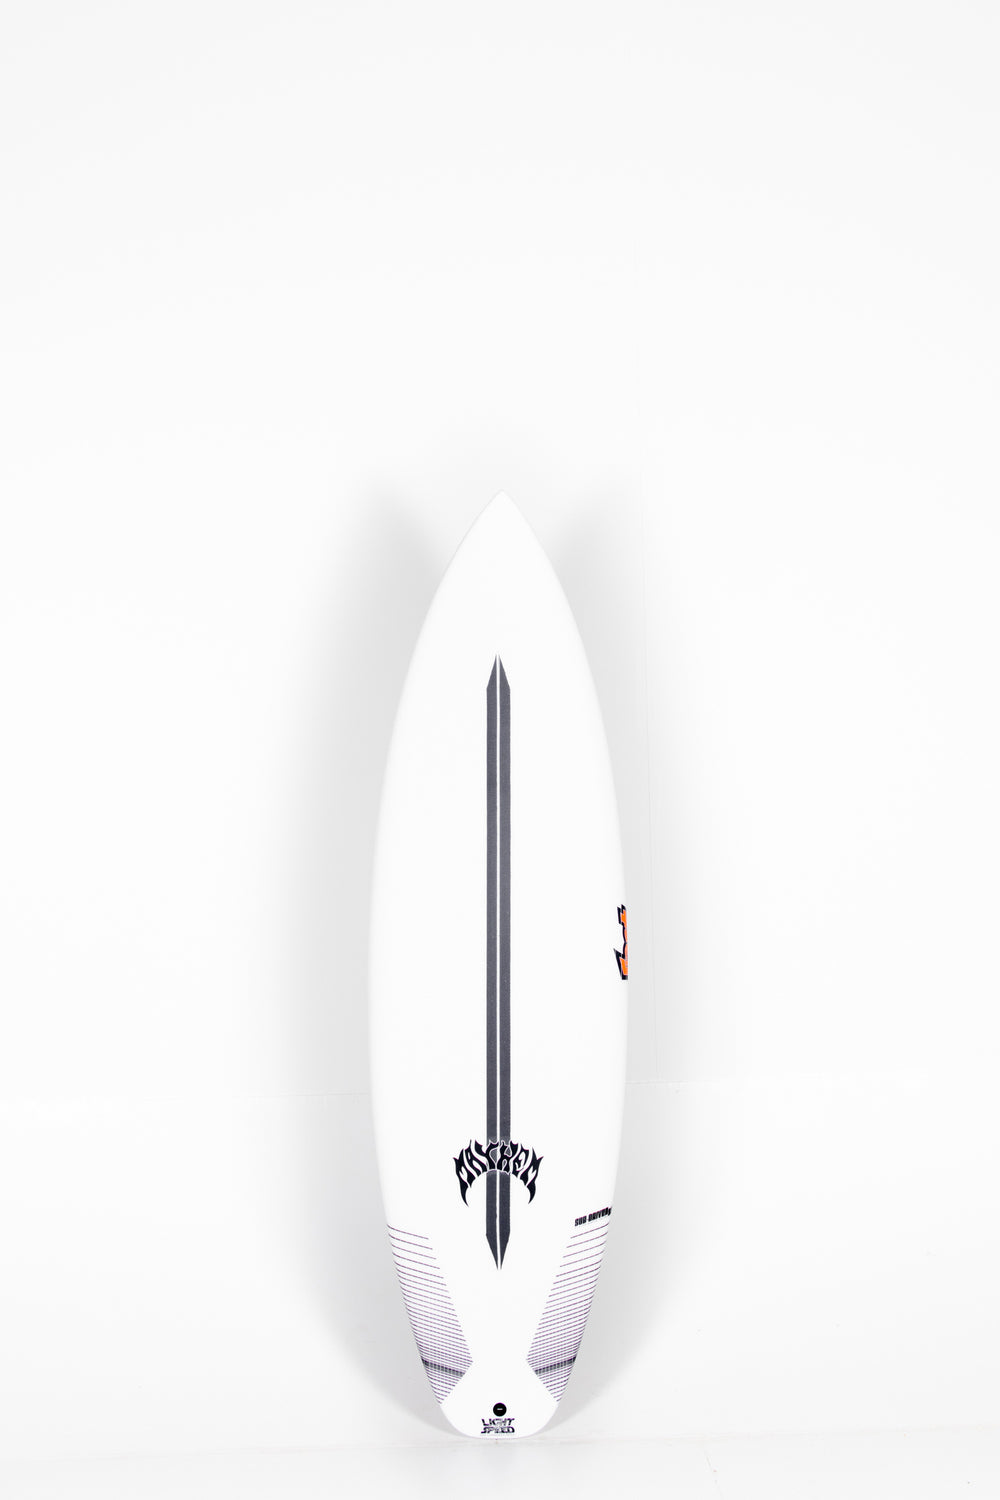 Lost Surfboard - SUB DRIVER 2.0 by Matt Biolos - Light Speed - 5 ...